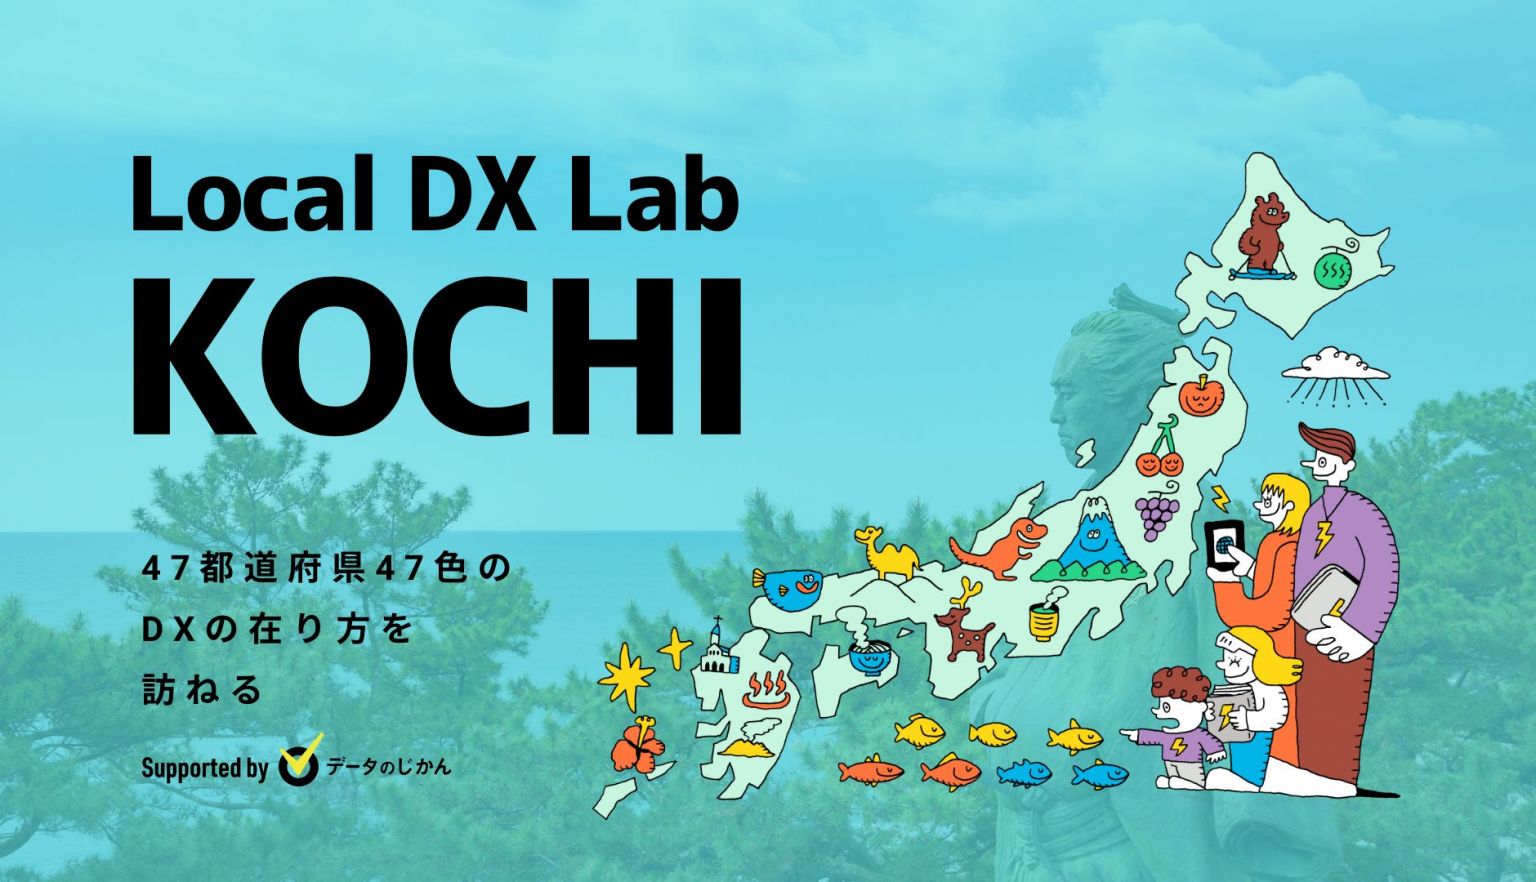 高知県の地域DX・デジタル化支援一覧47都道府県47色のDXの在り方を訪ねるLocalDXLab